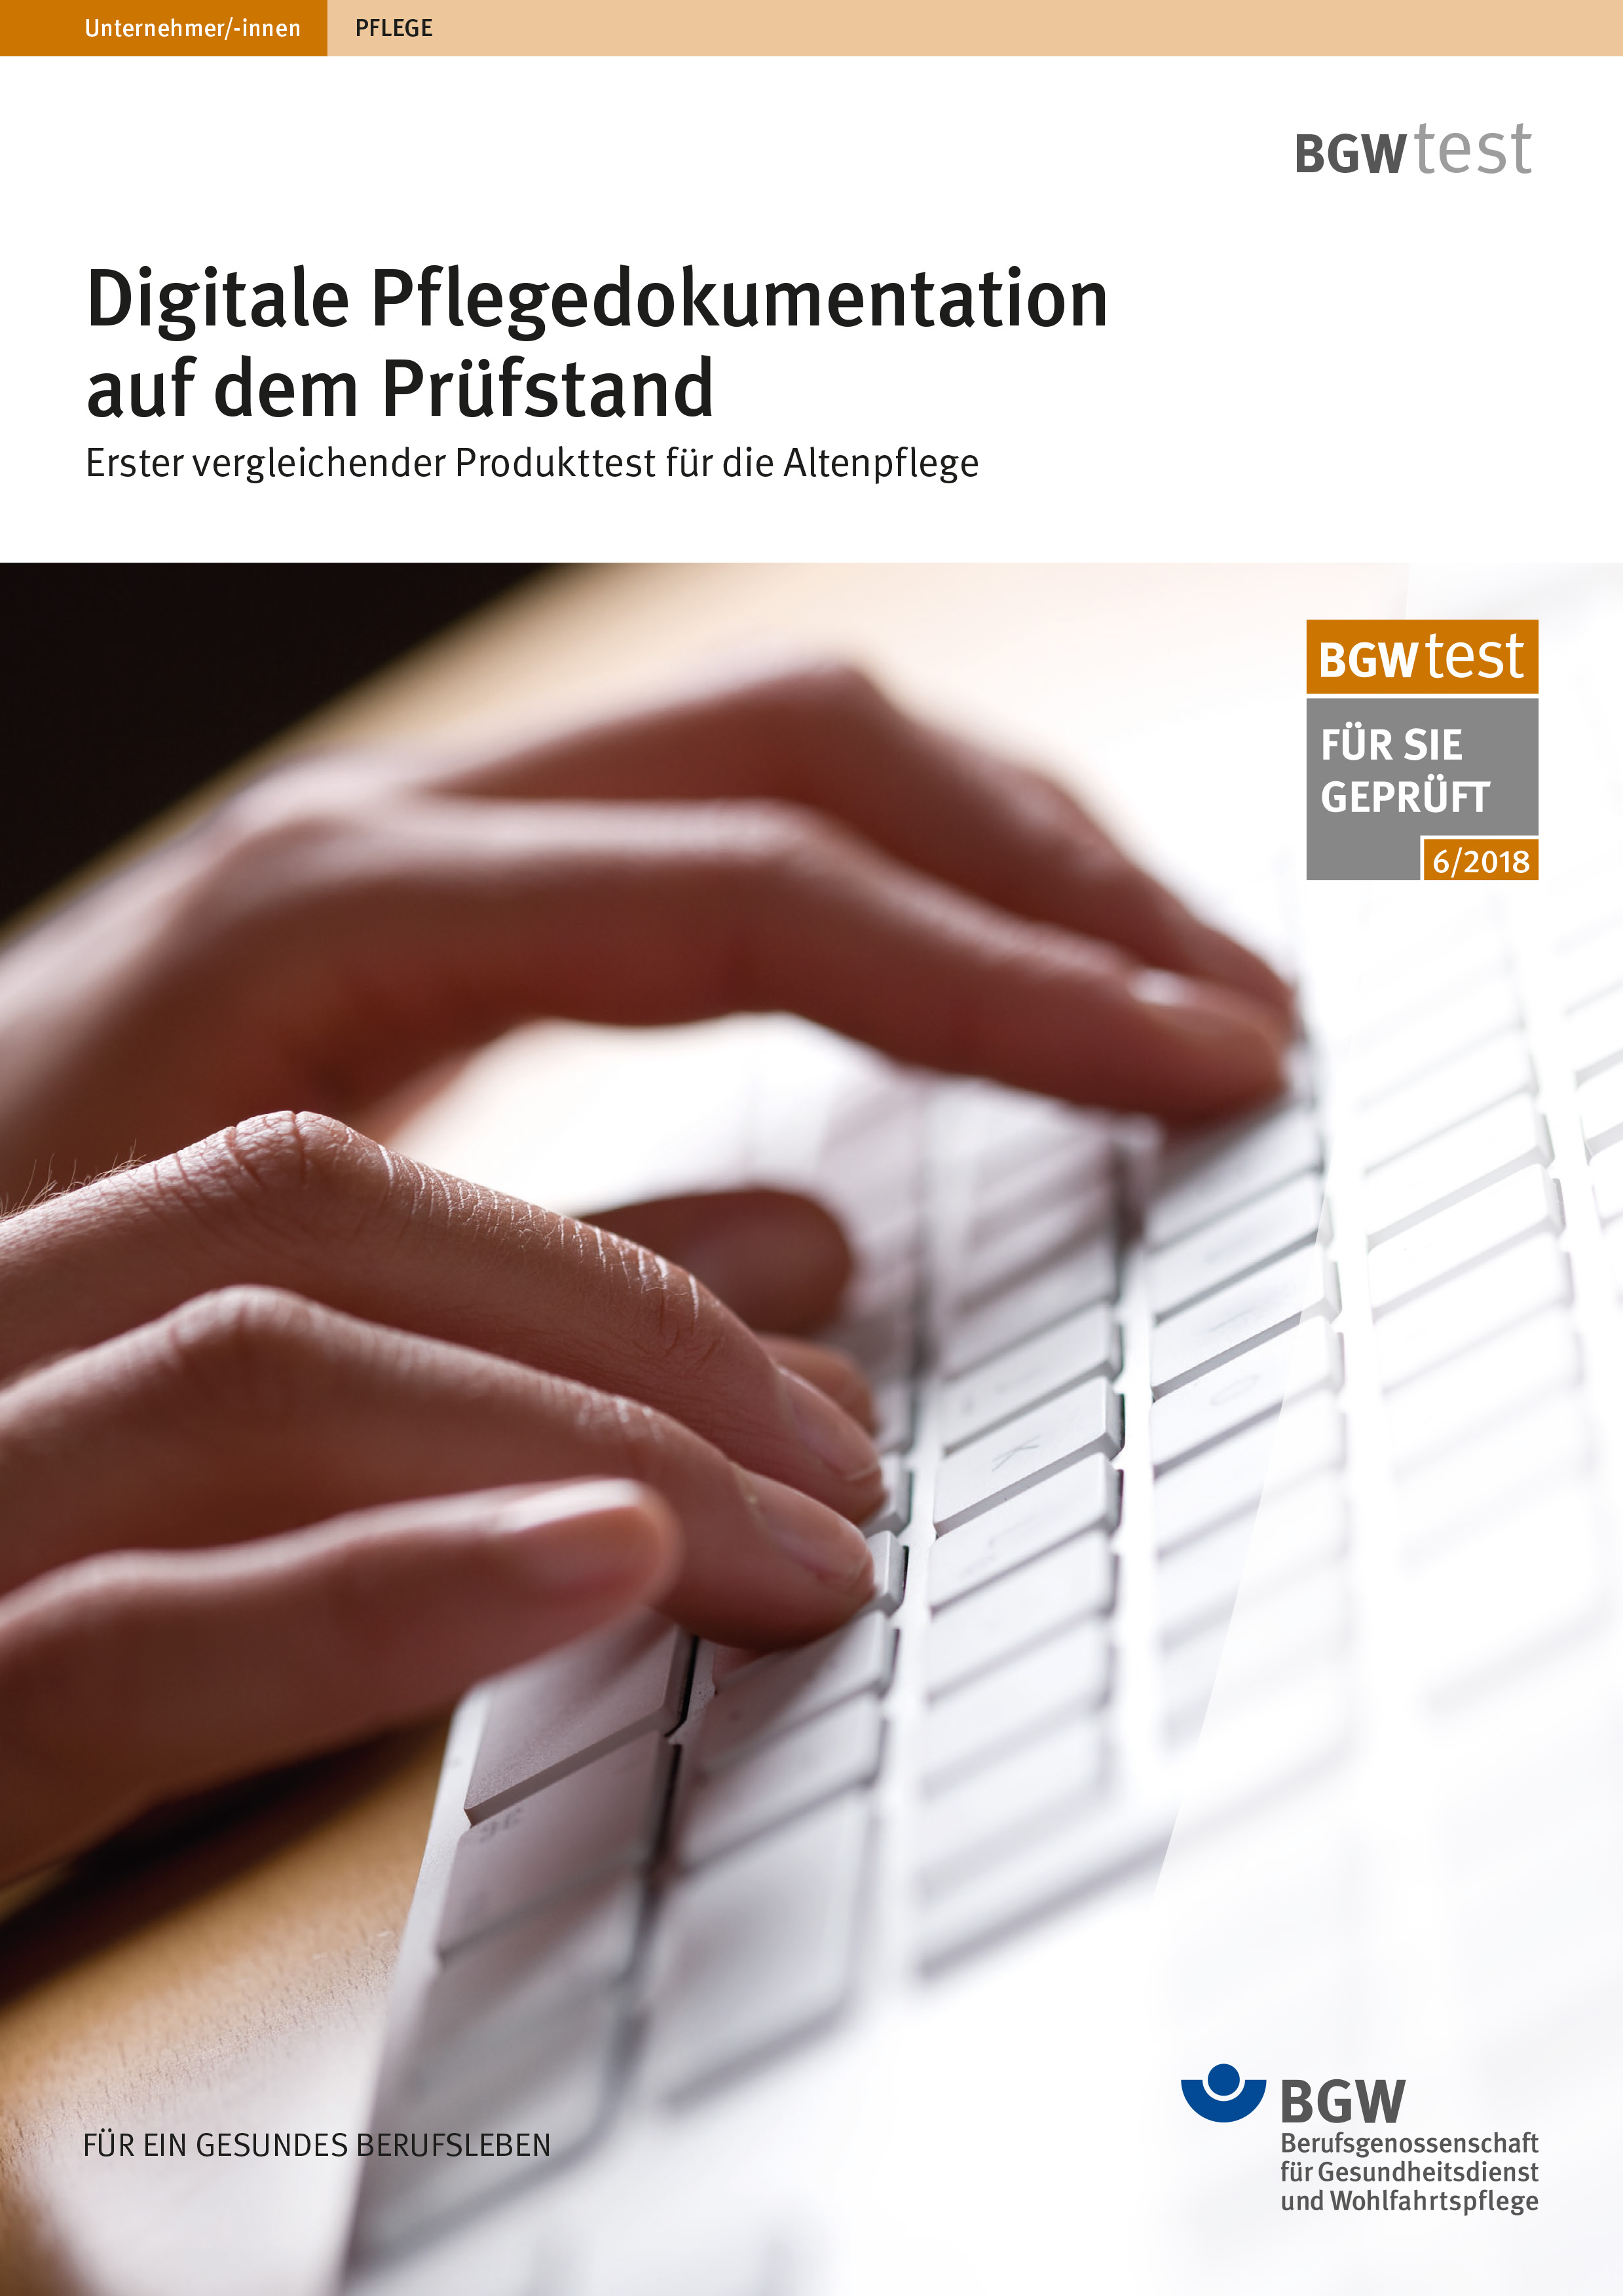 Titel: Digitale Pflegedokumentation auf dem Prüfstand - Hände an Computertastatur